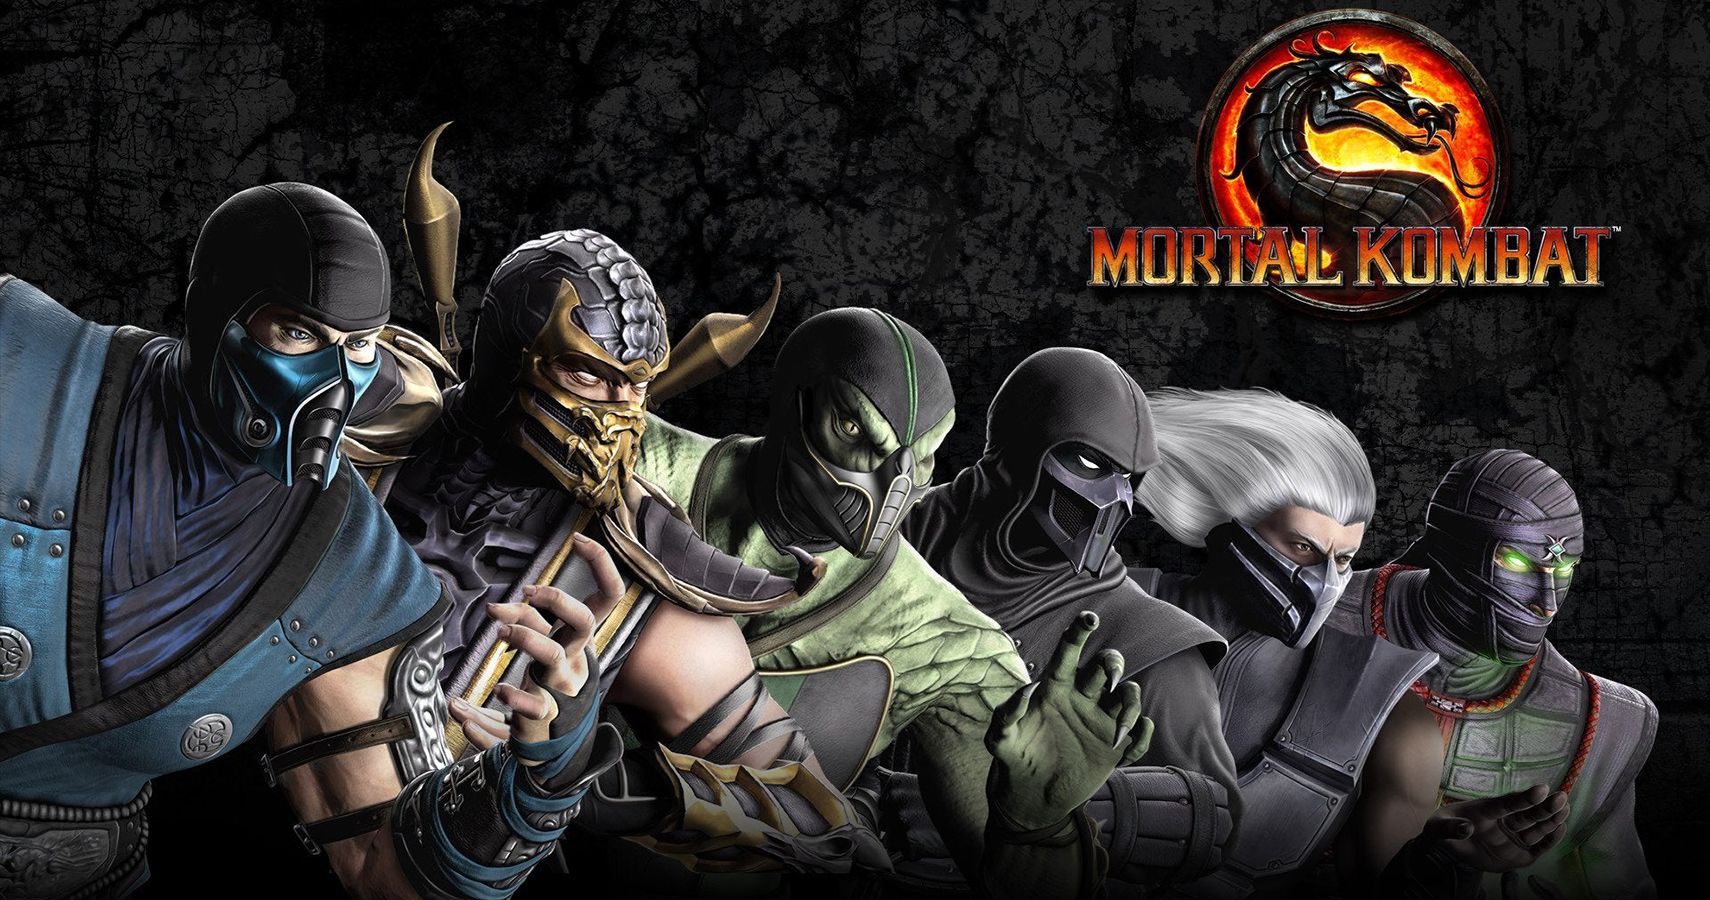 Mortal Kombat - Sindel gameplay is cool, but Mortal Kombat 11 now has ...